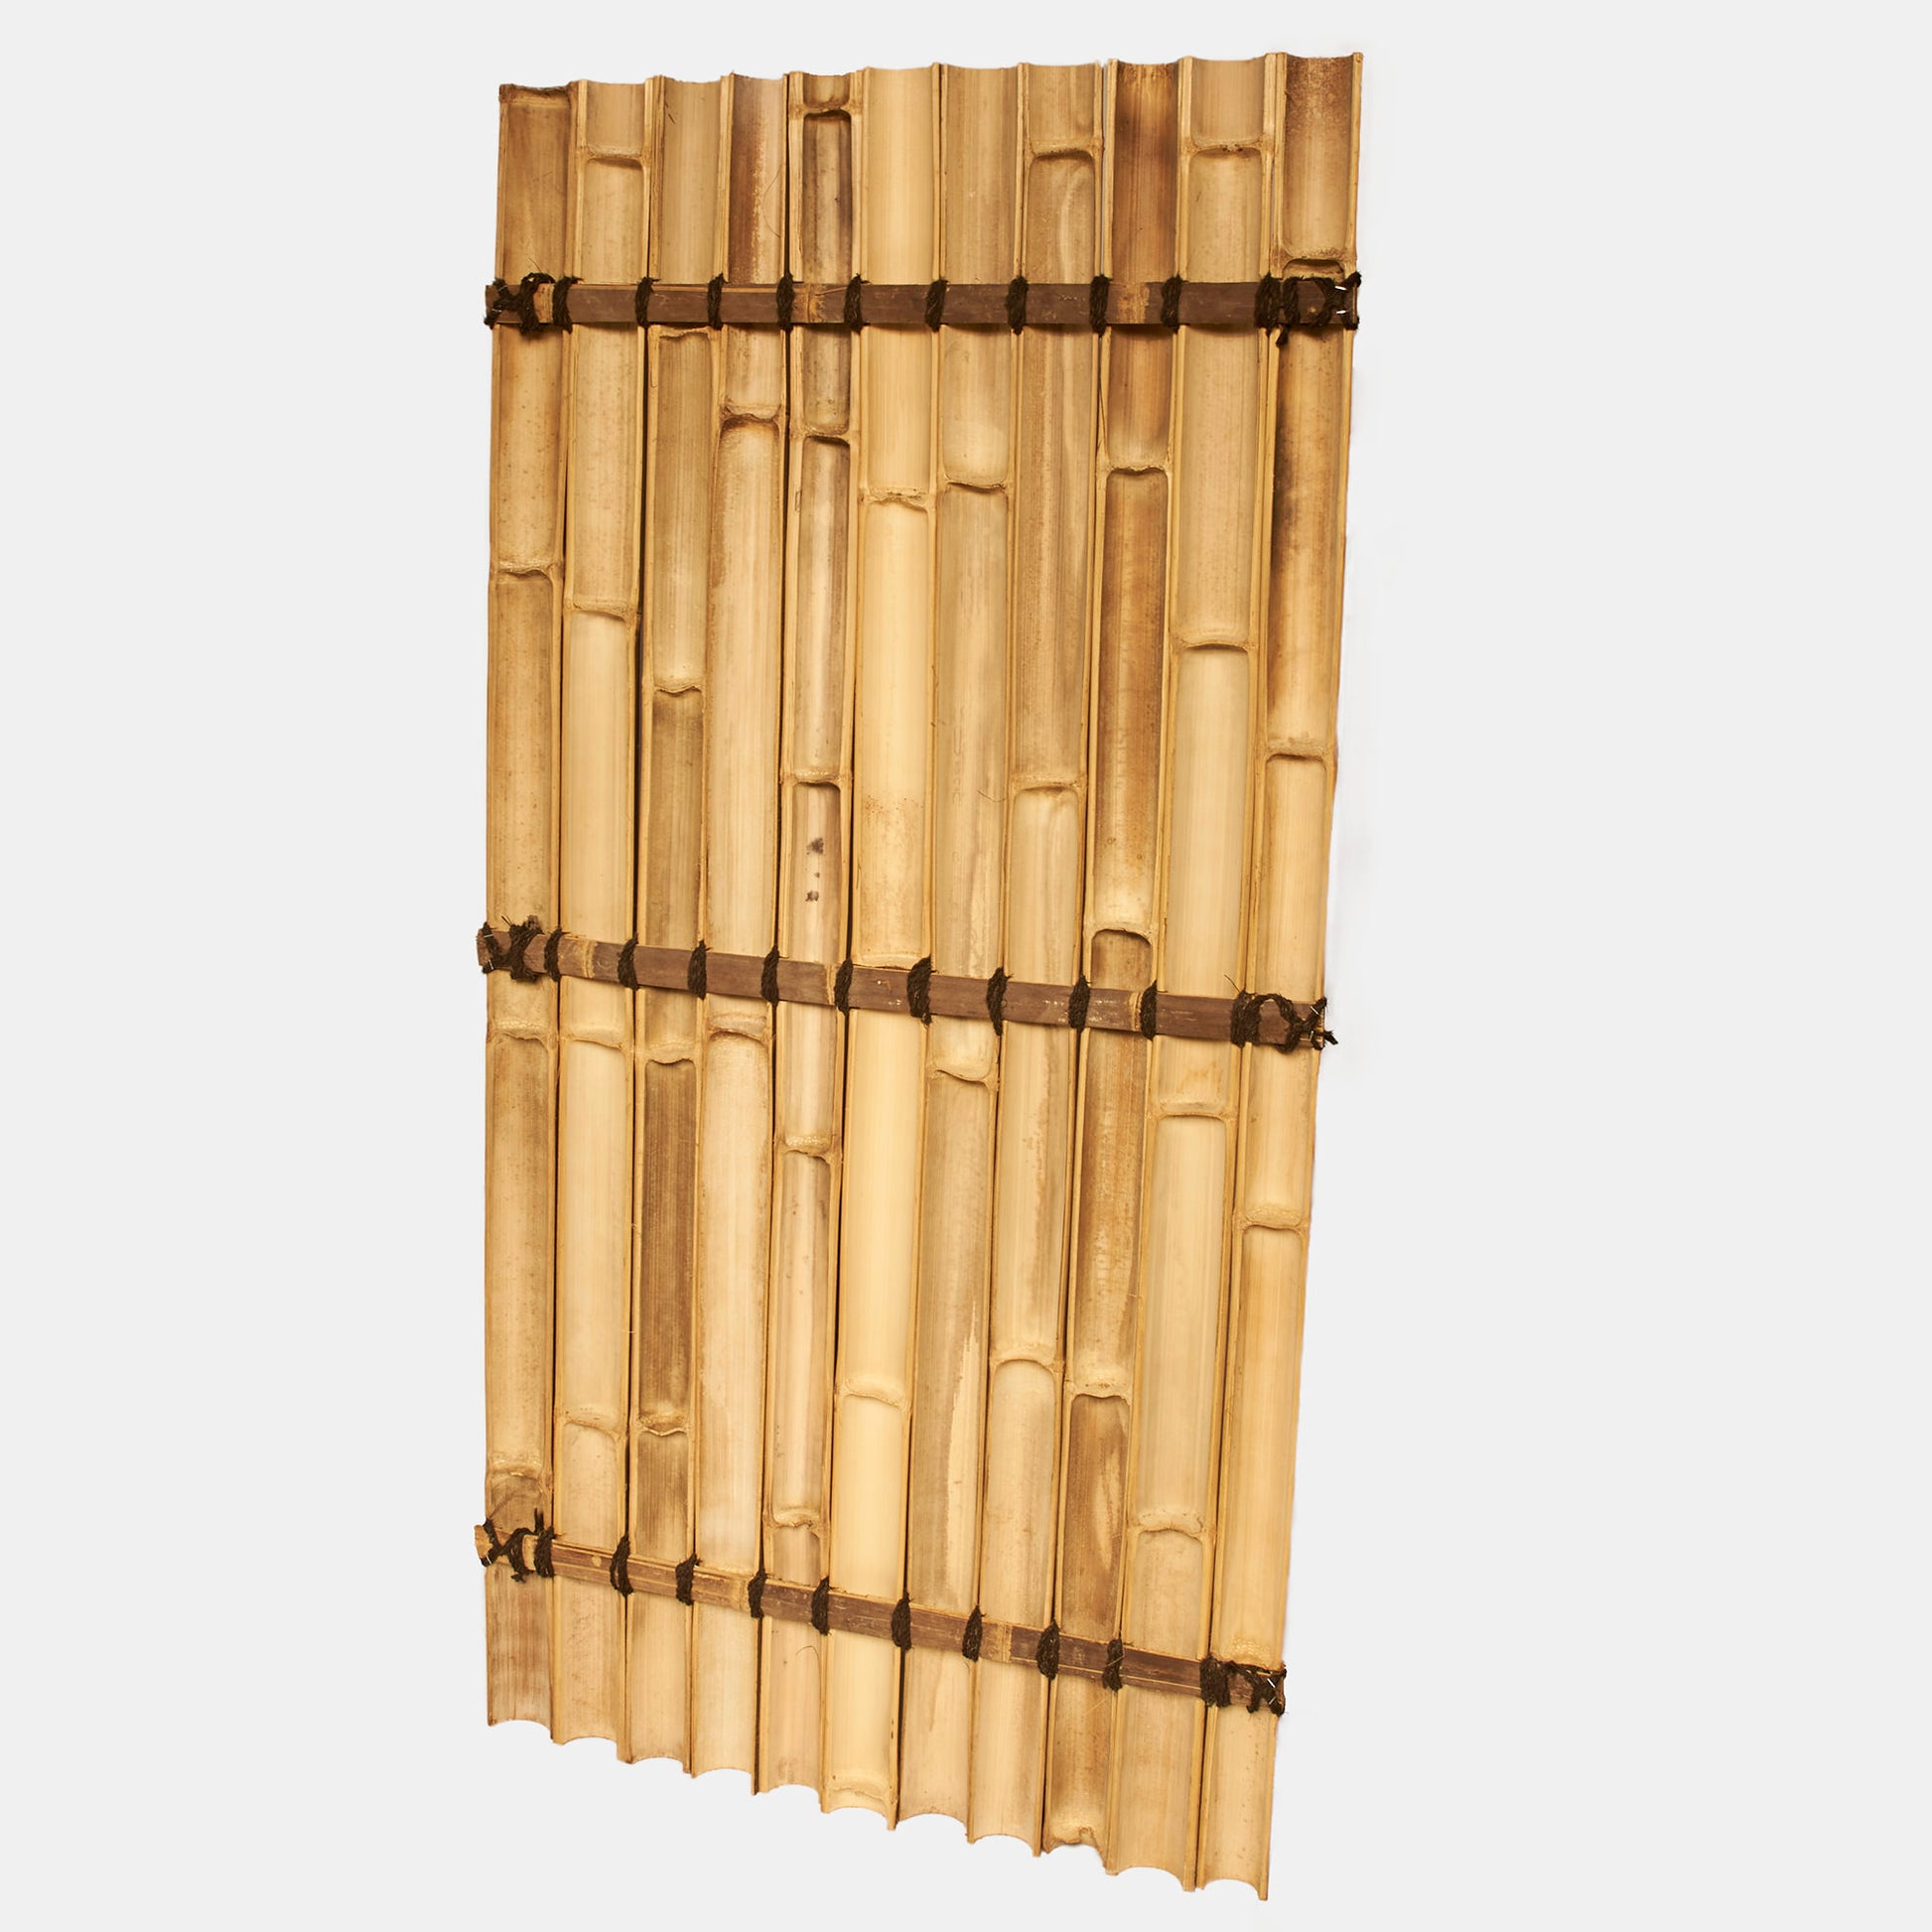 Sichtschutz oder Wandverkleidung aus halben beigen Bambusrohren mit Kokosschnürung als Dekoration - Produktfoto von hinten